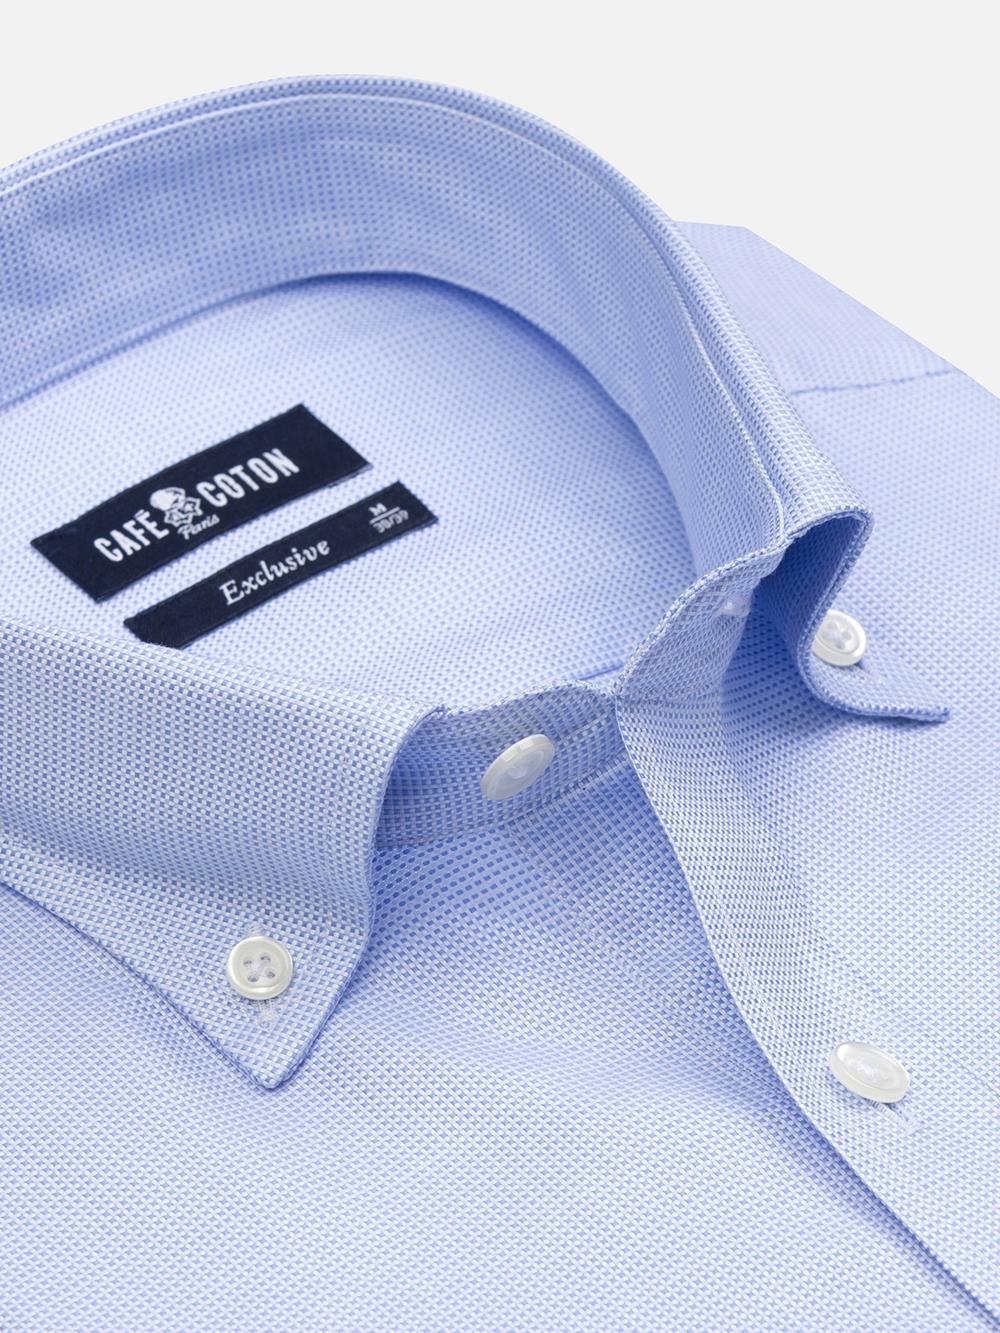 Sky braid shirt - Button down collar